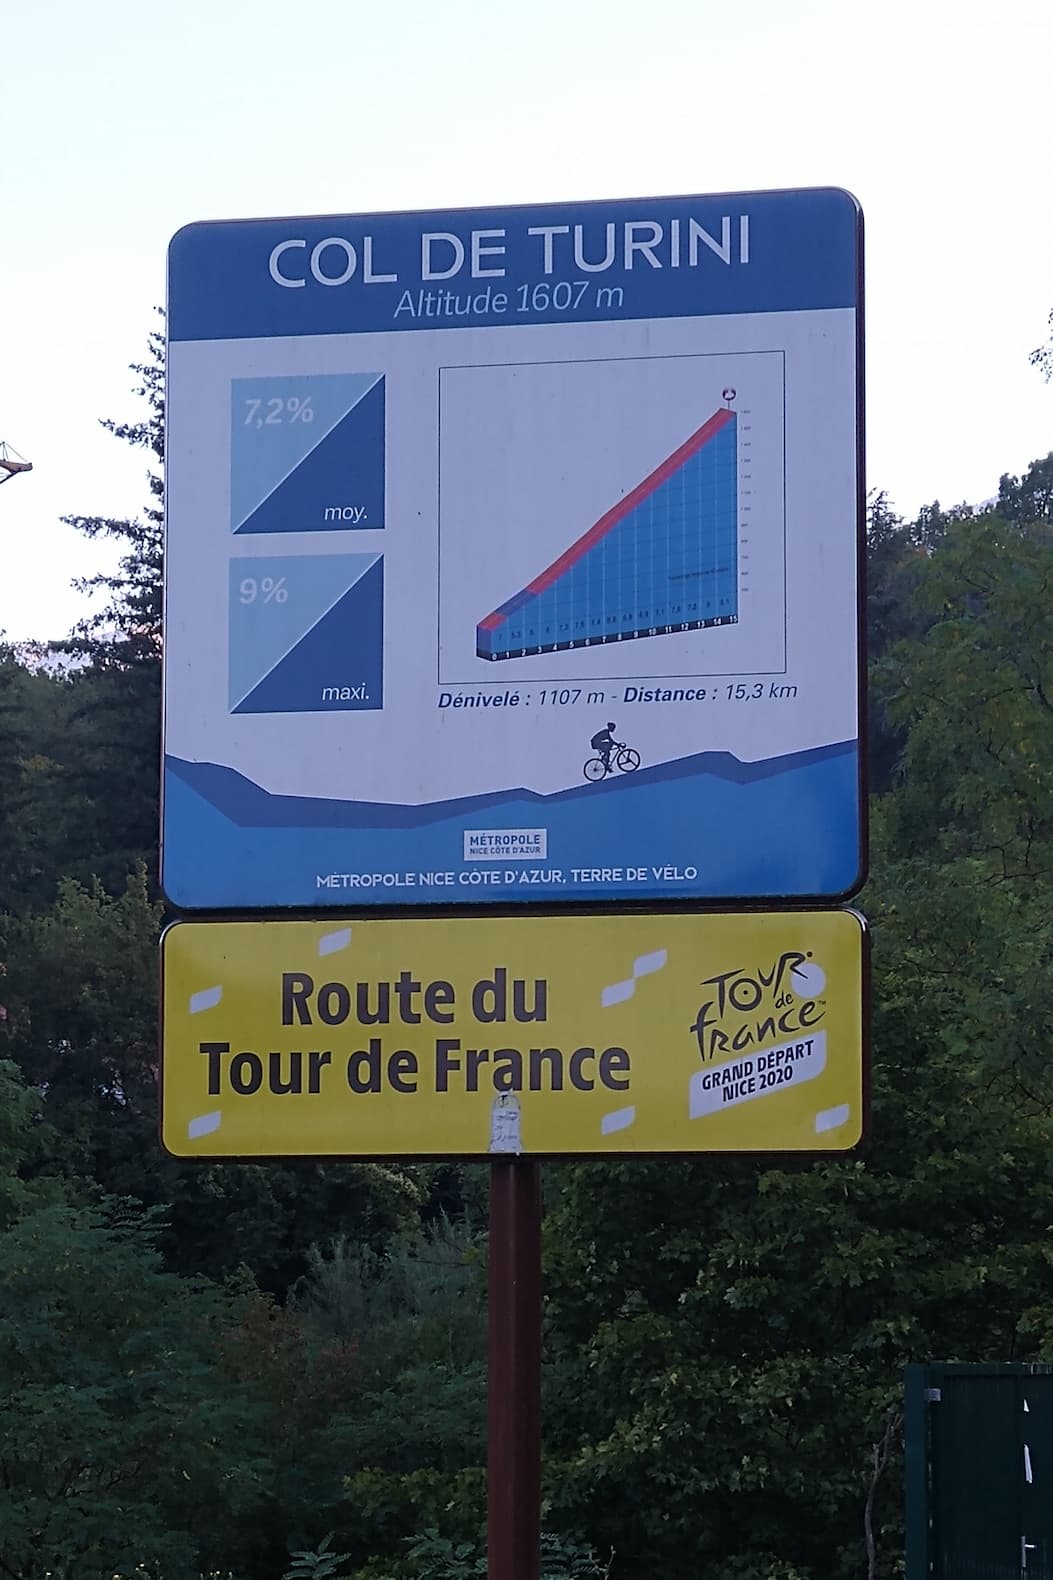 Tour de France sign for the climb to Col de Turini